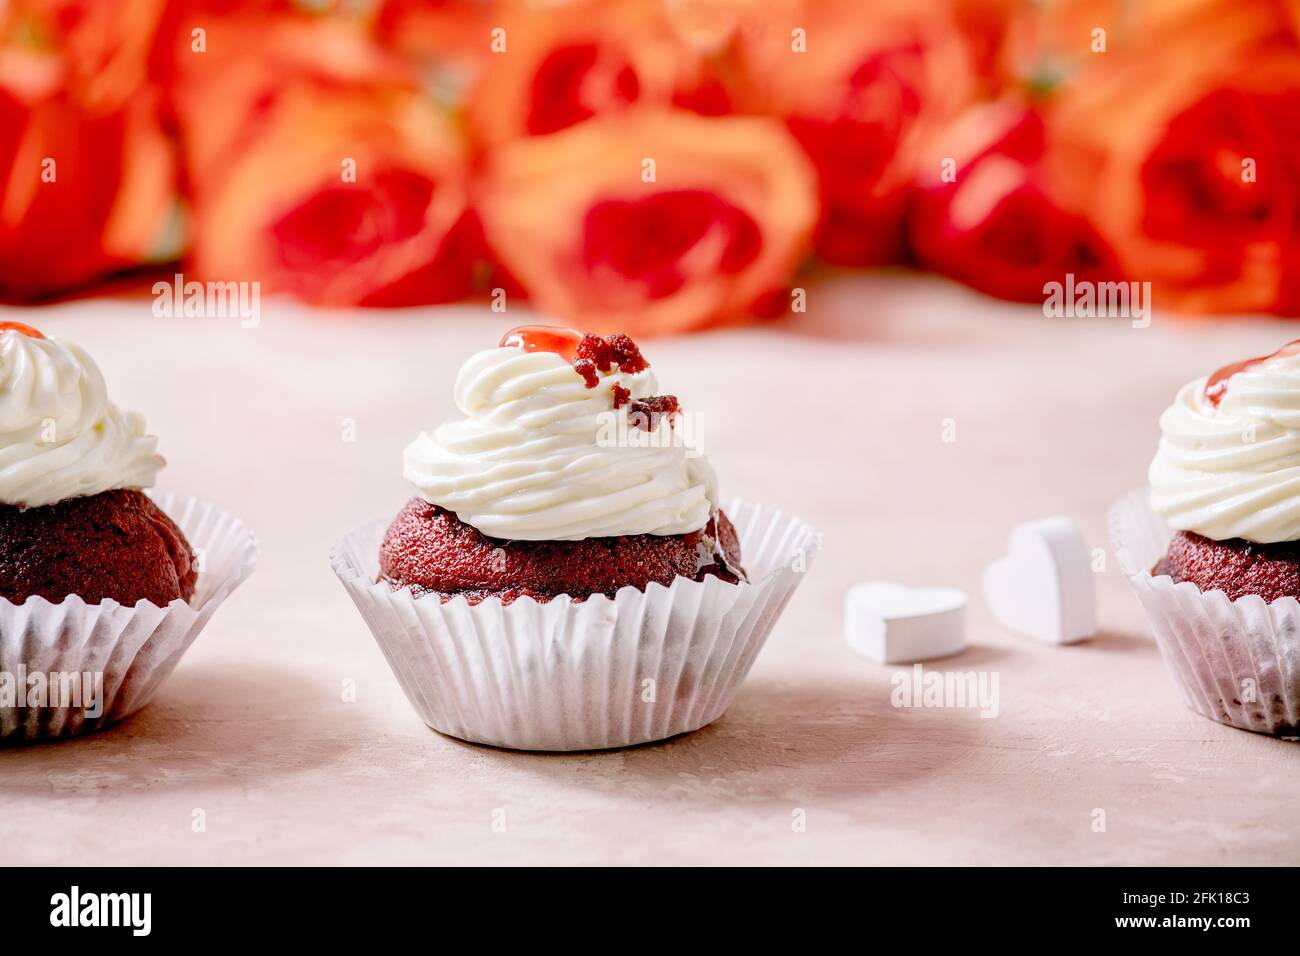 Petits gâteaux faits maison en velours rouge avec crème fouettée en rangée, serviette blanche avec ruban, fleurs roses, coeurs en bois sur fond de texture rose. Saint-Valentin Banque D'Images